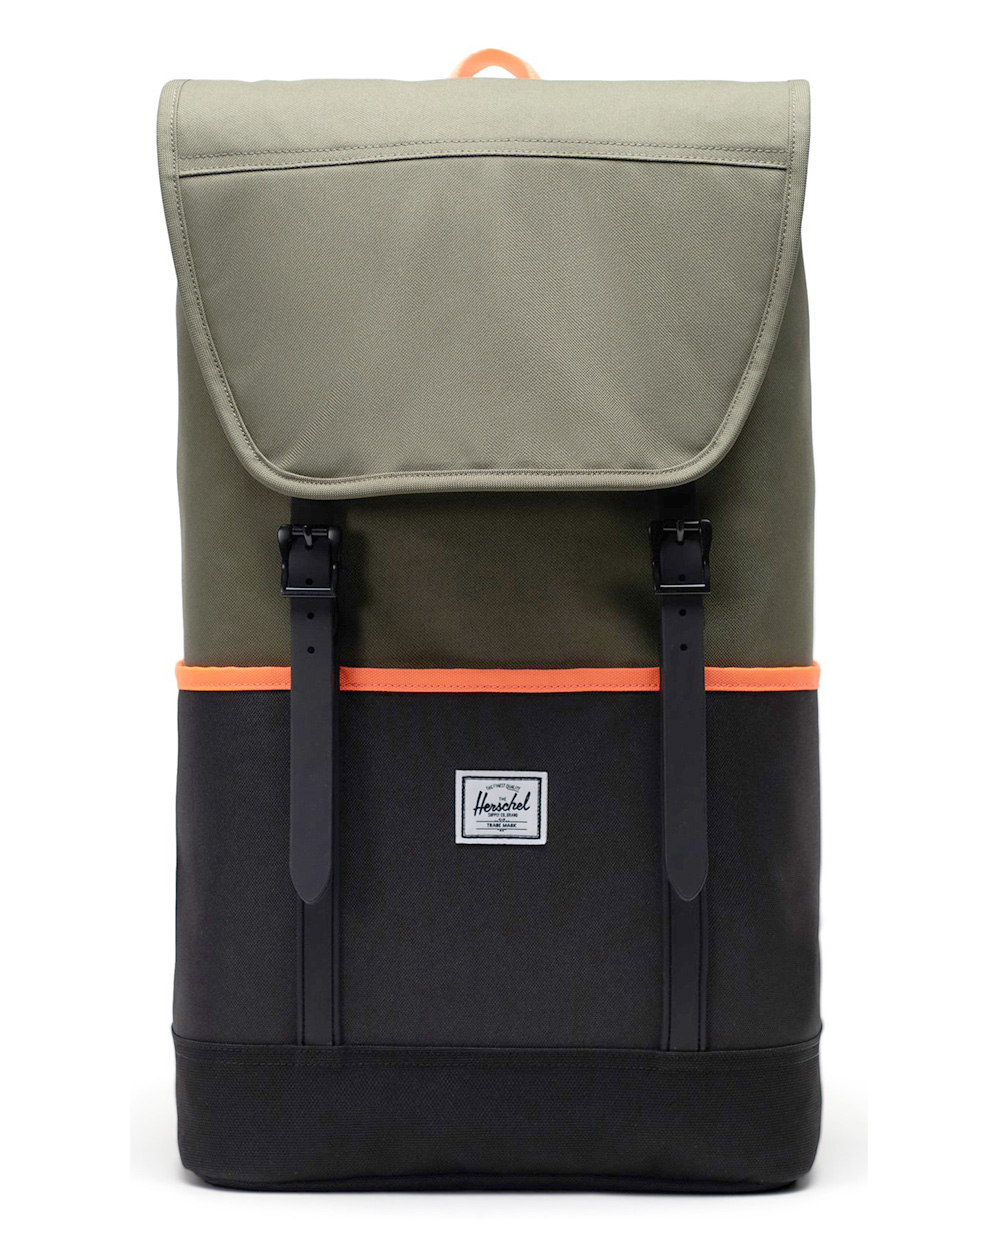 Рюкзак водостойкий  для 15 ноутбука Herschel Retreat Pro Ivy Green Black отзывы